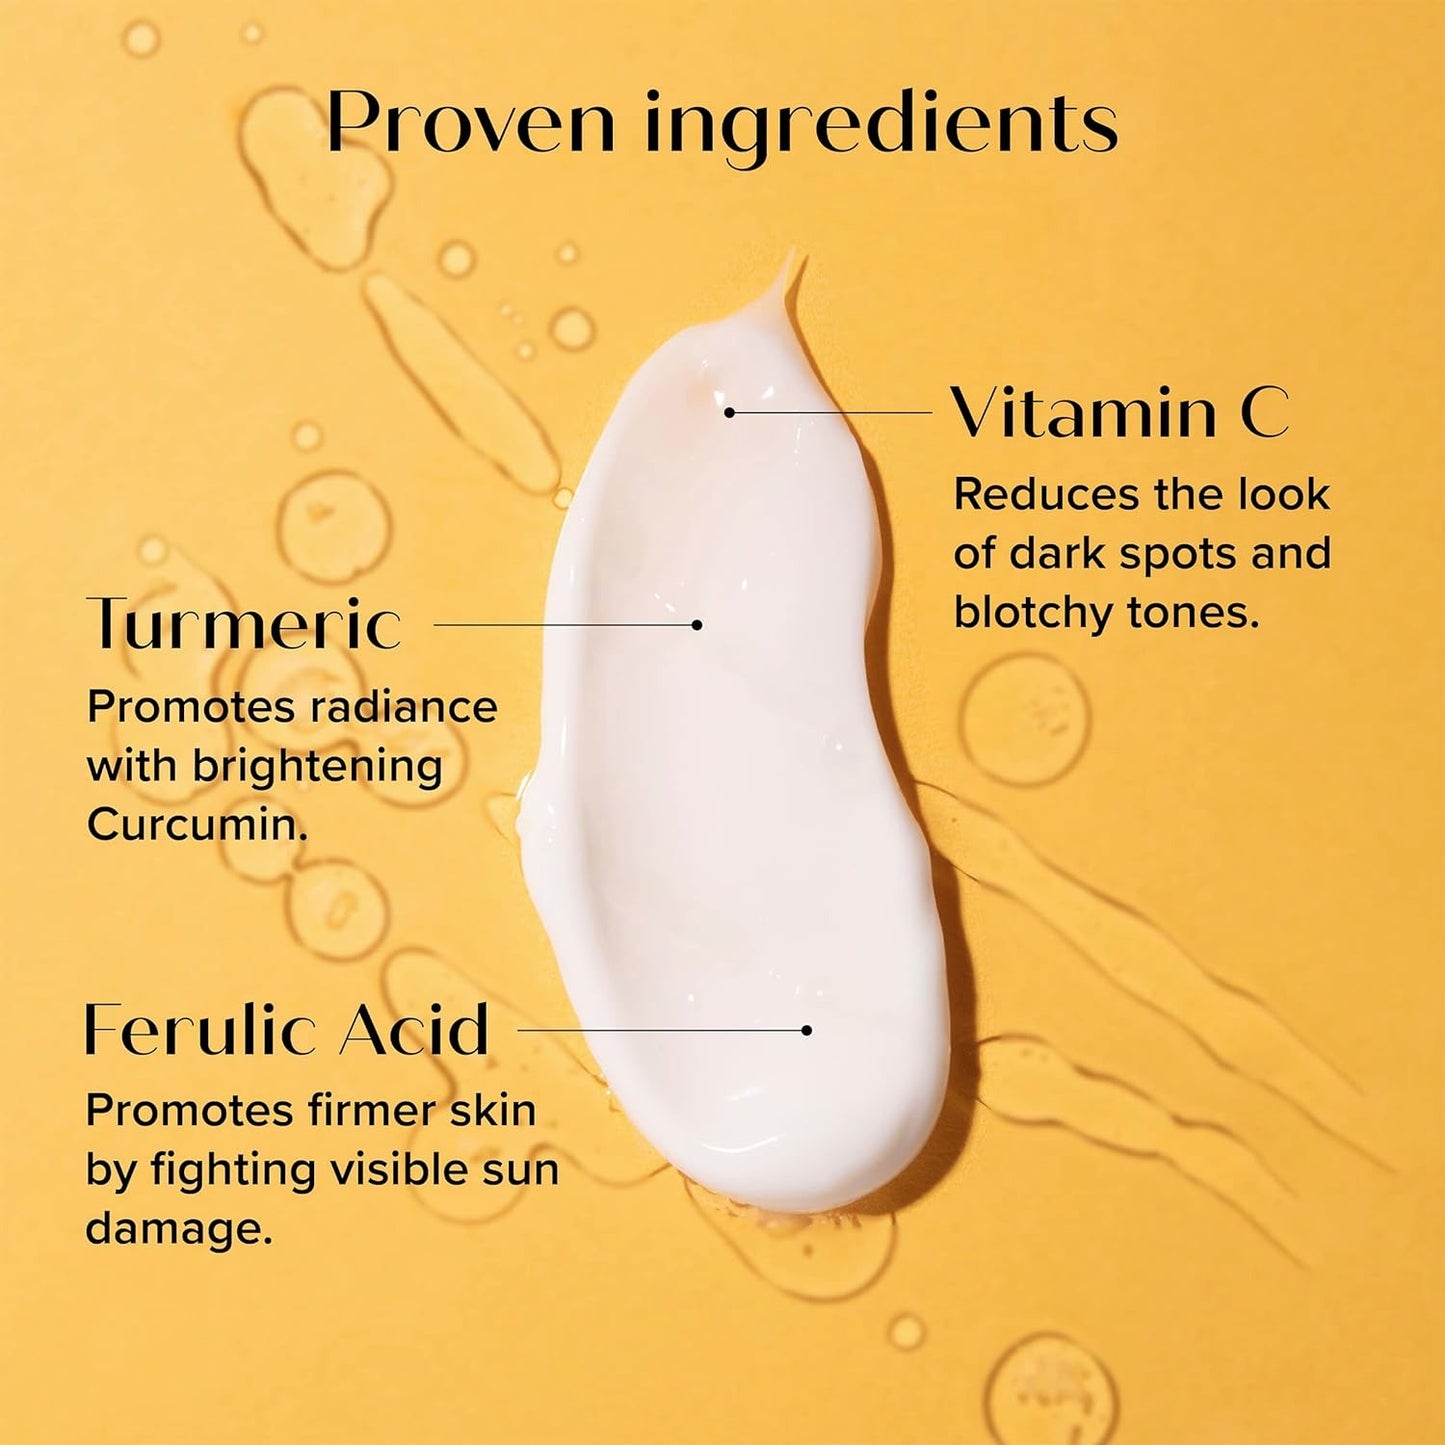 Medix 5.5 Crème à la vitamine C turmeric  et au curcuma pour le visage et le corps. Crème raffermissante et éclaircissante pour les taches de vieillesse, les taches brunes et la peau endommagée par le soleil. C